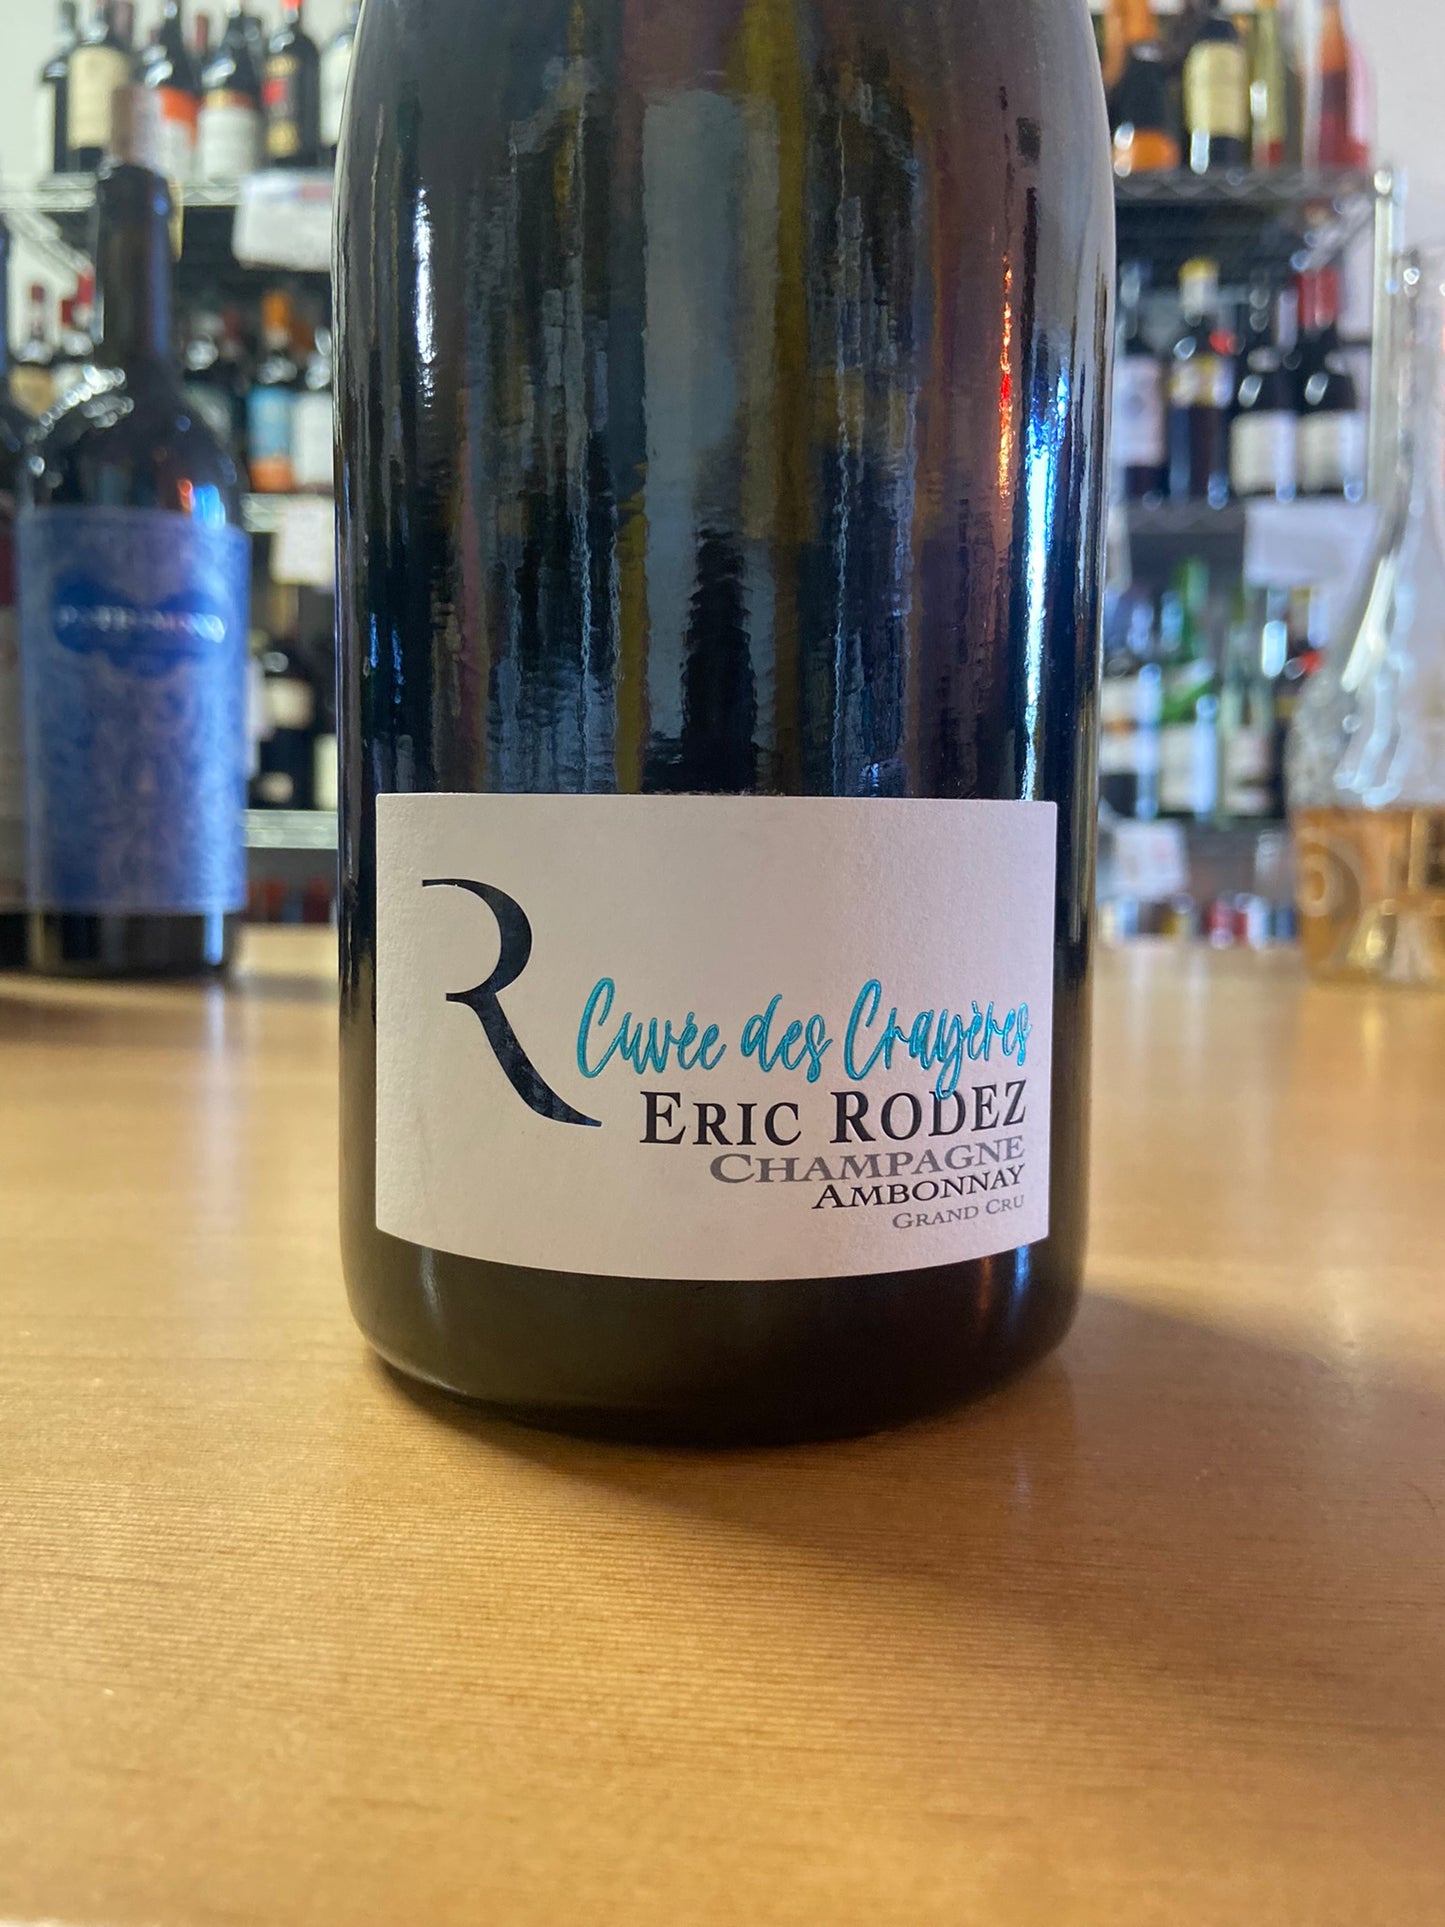 ERIC RODEZ NV Brut Champagne 'Cuvée des Crayeres' (Champagne, France)